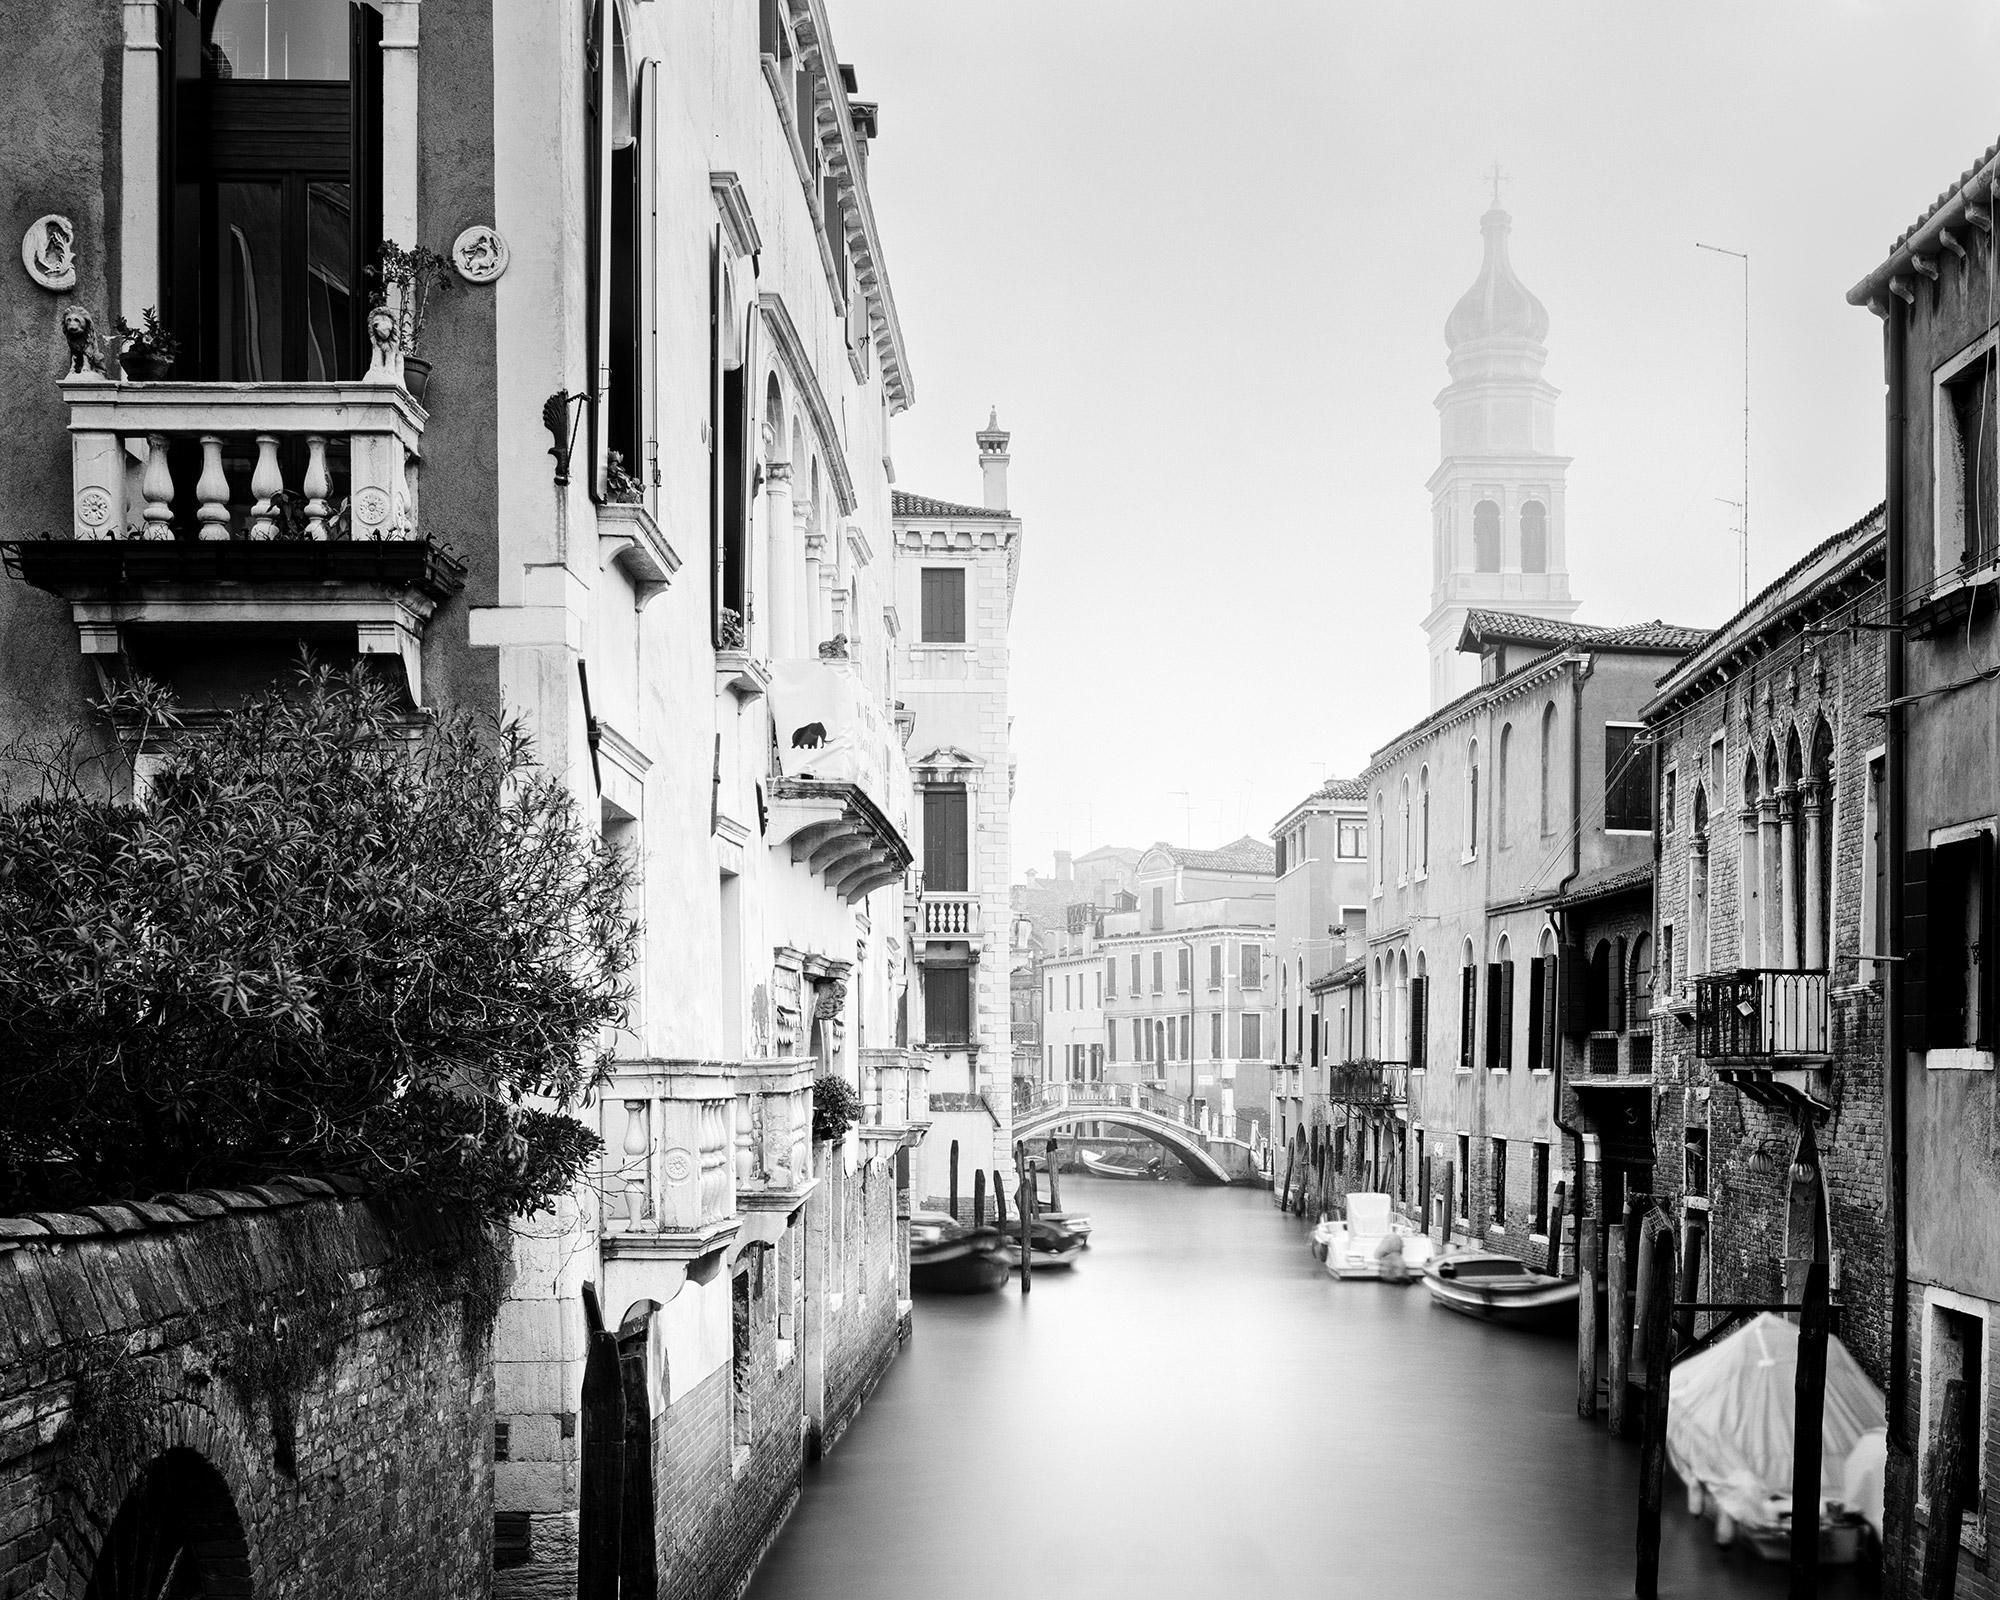 Gerald Berghammer Landscape Photograph - San Giorgio dei Greci, Venice, Italy, black and white photography, landscape